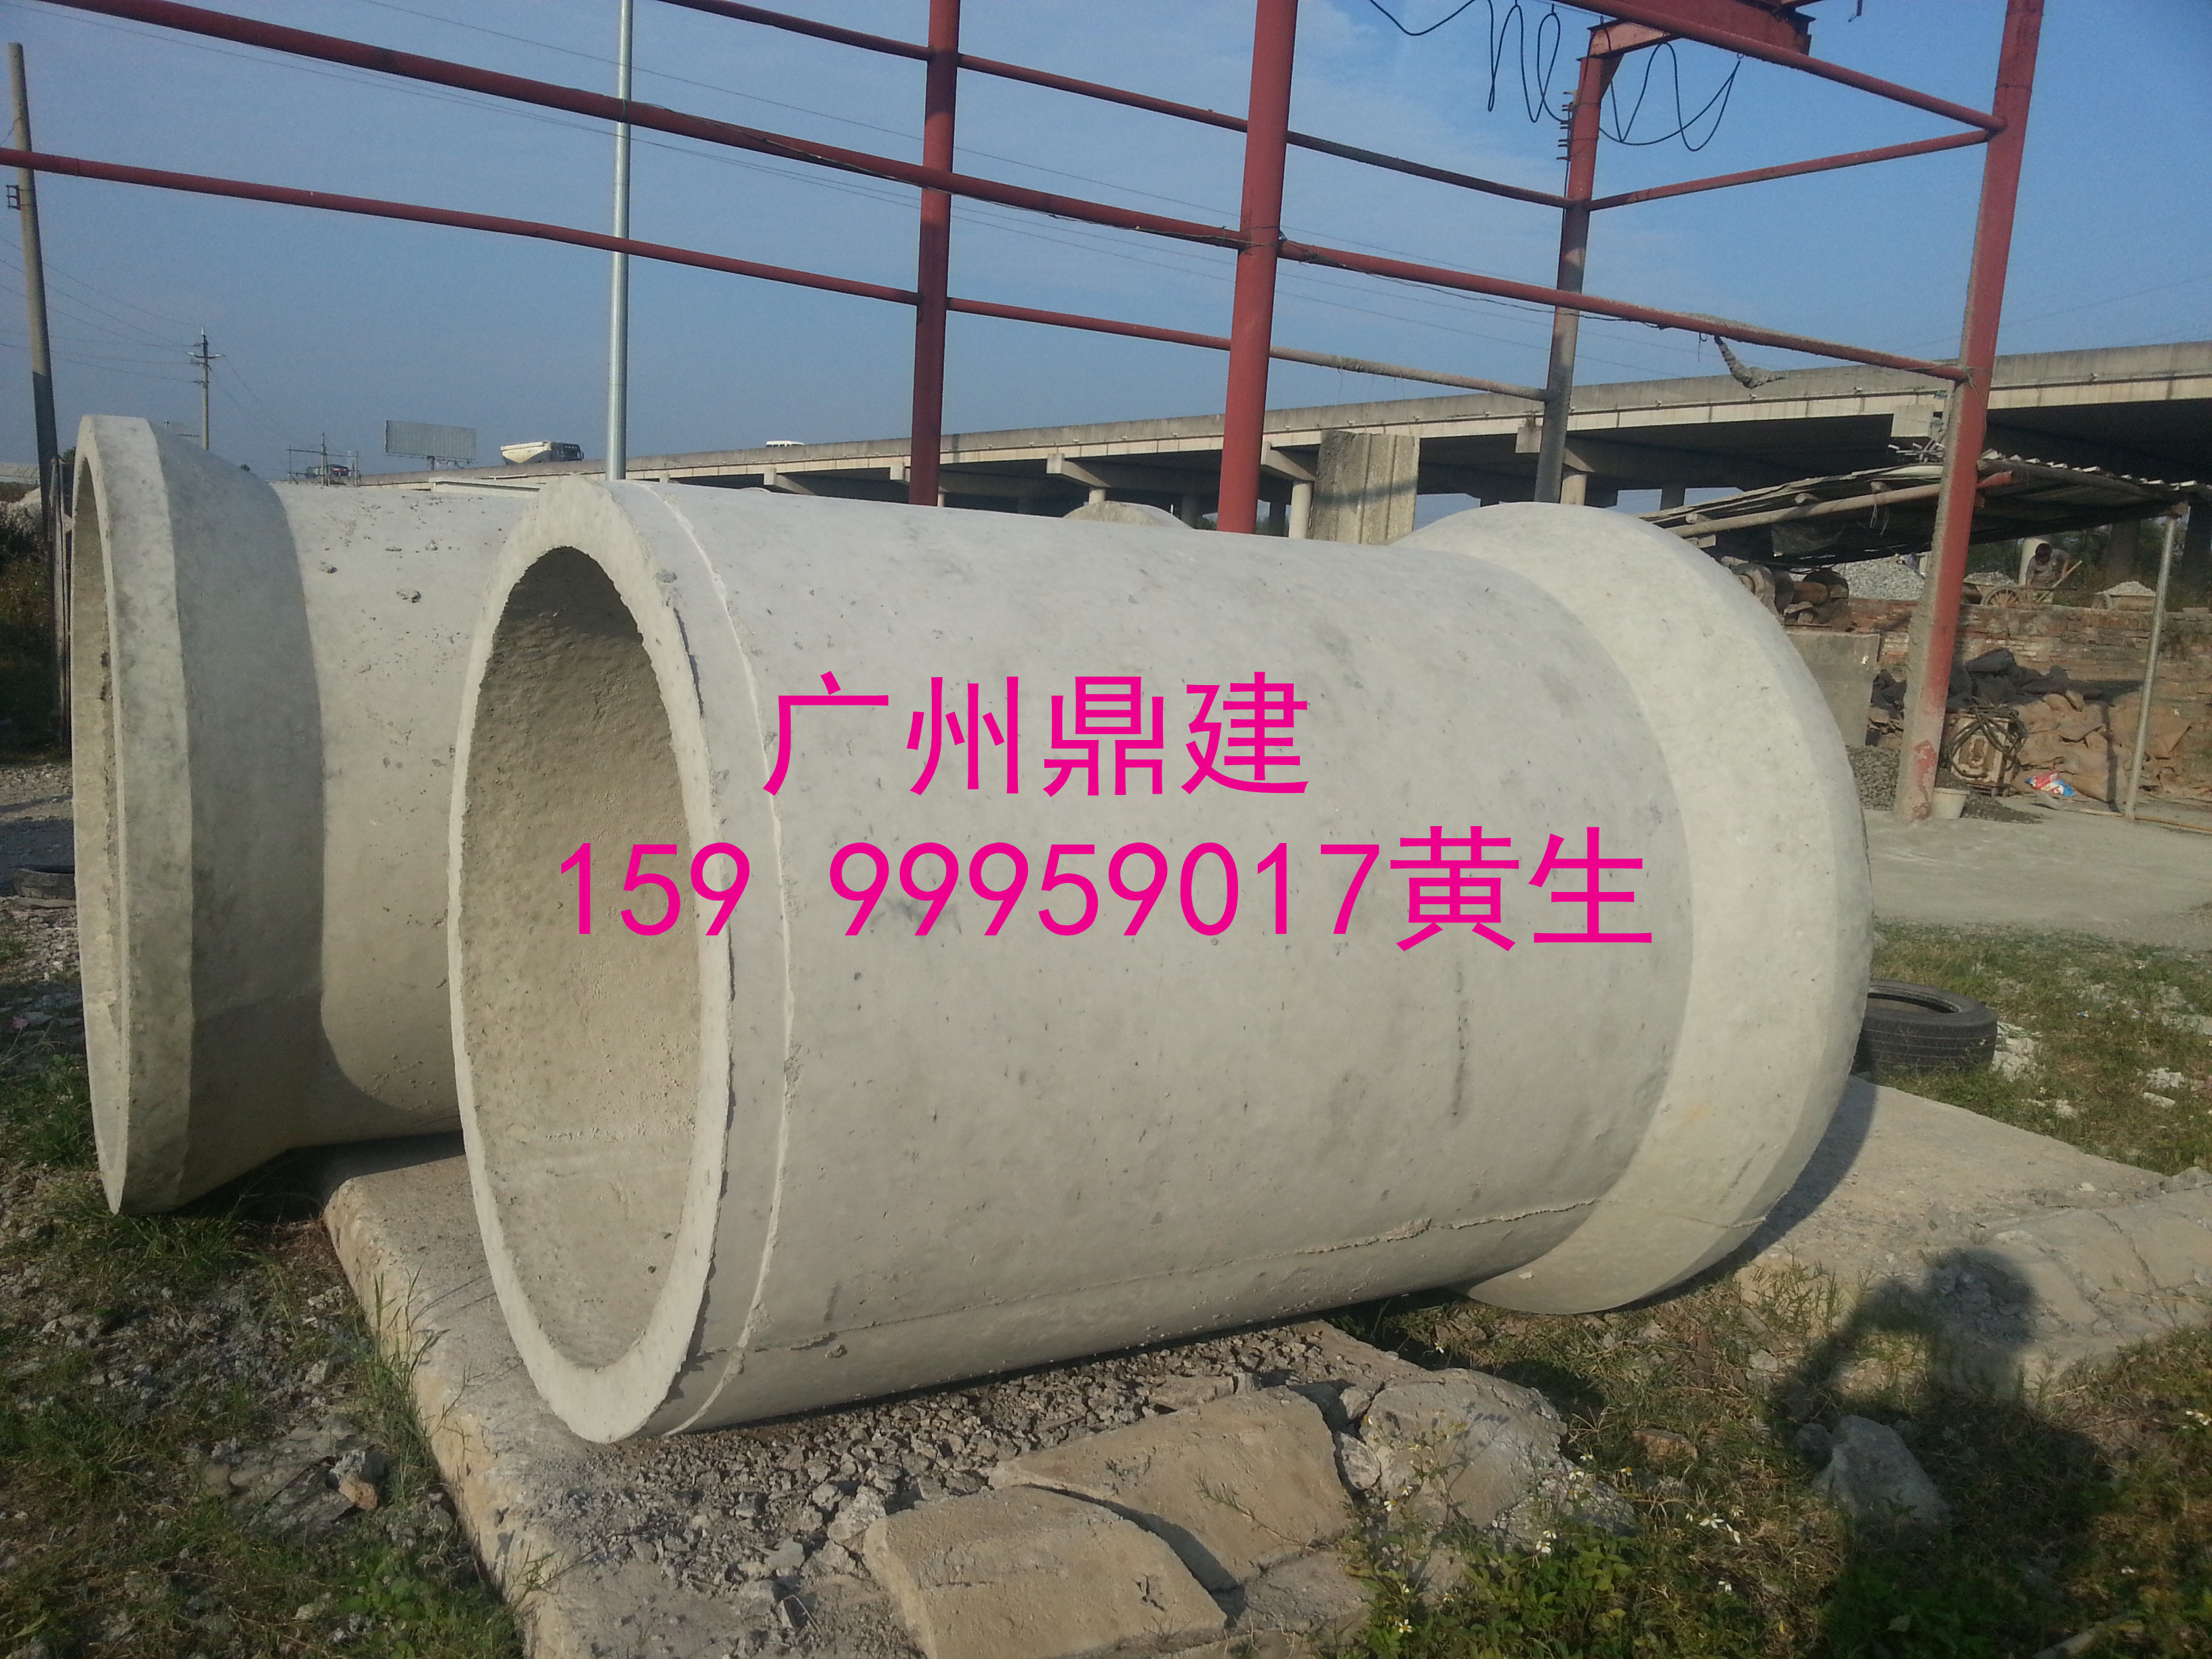 广州越秀 广州越秀钢筋混凝土管 广州越秀钢筋混凝土管官方图片